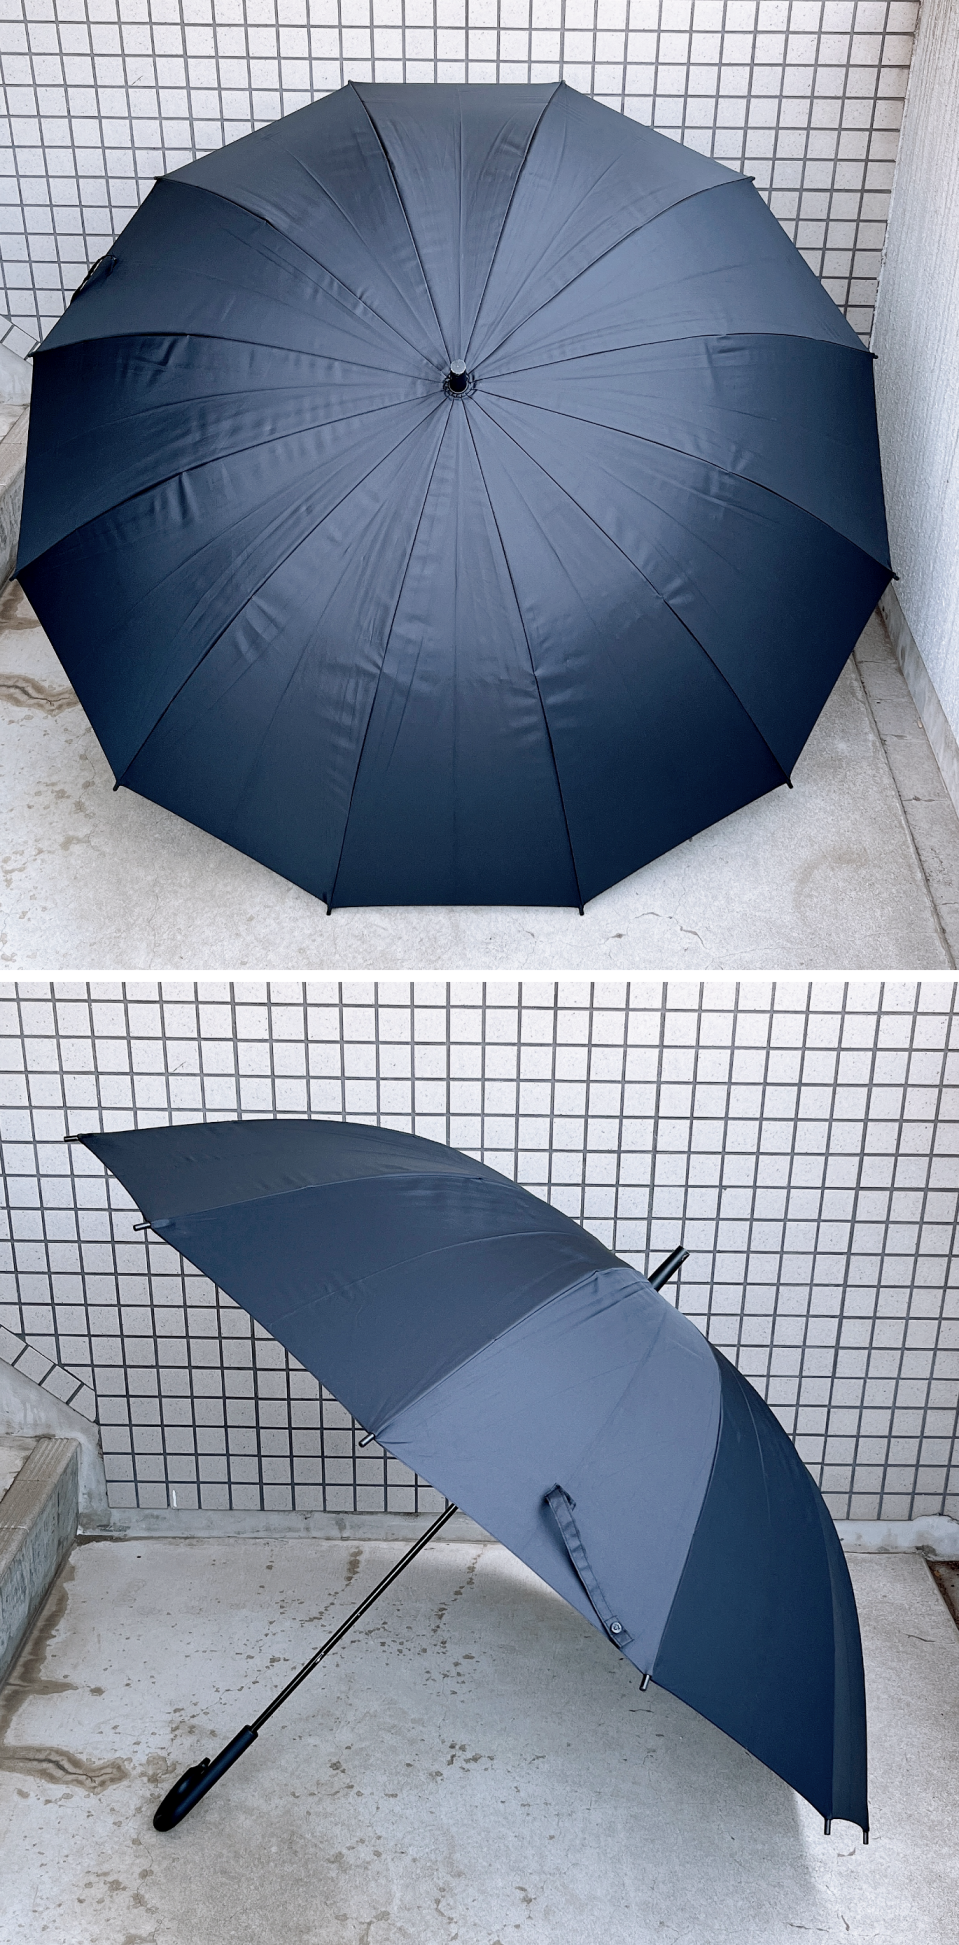 無印良品のおすすめレイングッズ「しるしのつけられる 大きい傘」